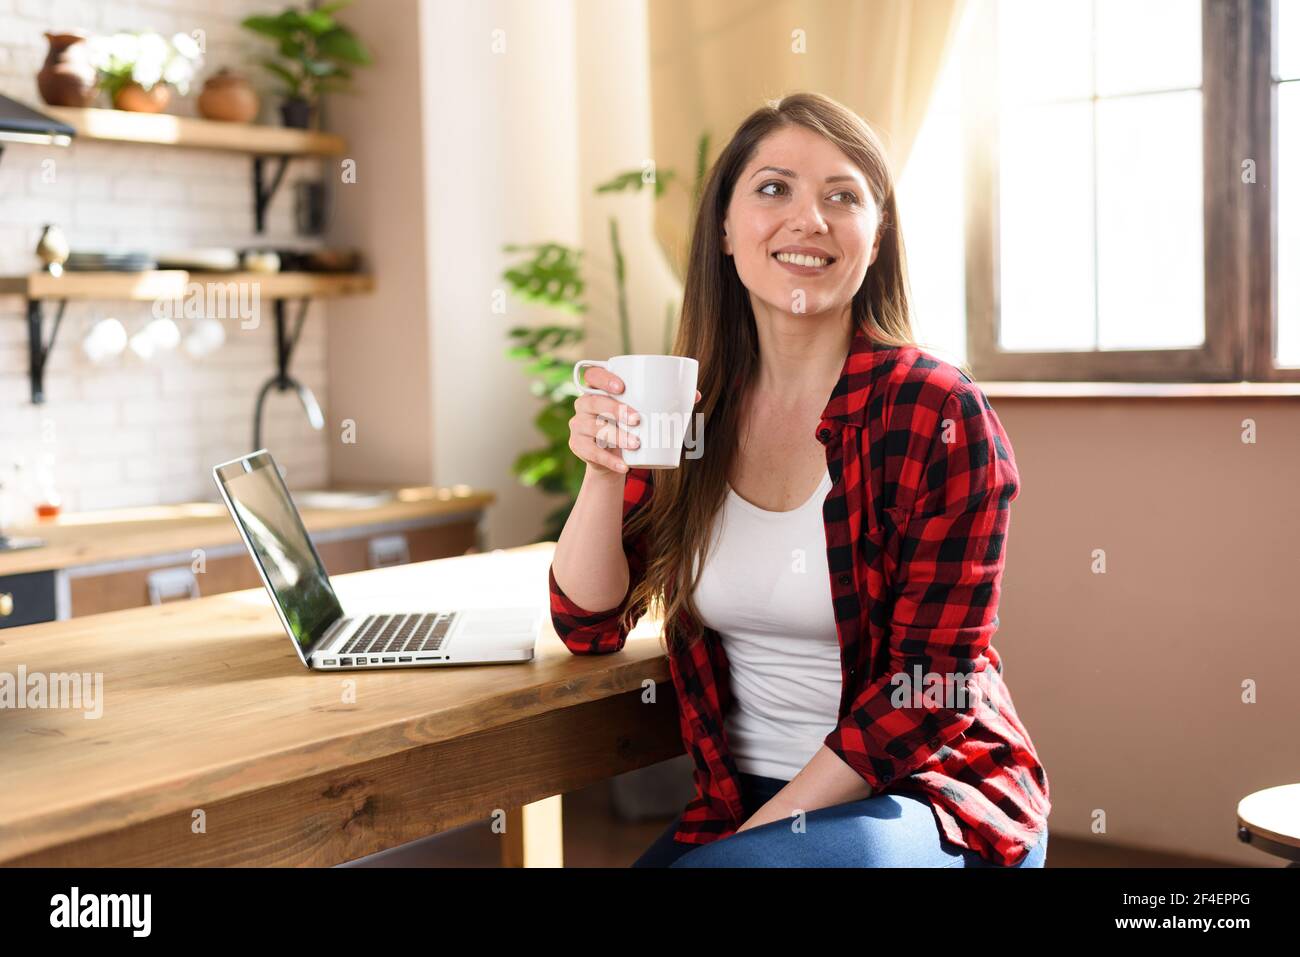 Frau surft im Internet mit ihrem Laptop mit einem weißen Bildschirm. Sie arbeitet zu Hause als Smart Working Stockfoto